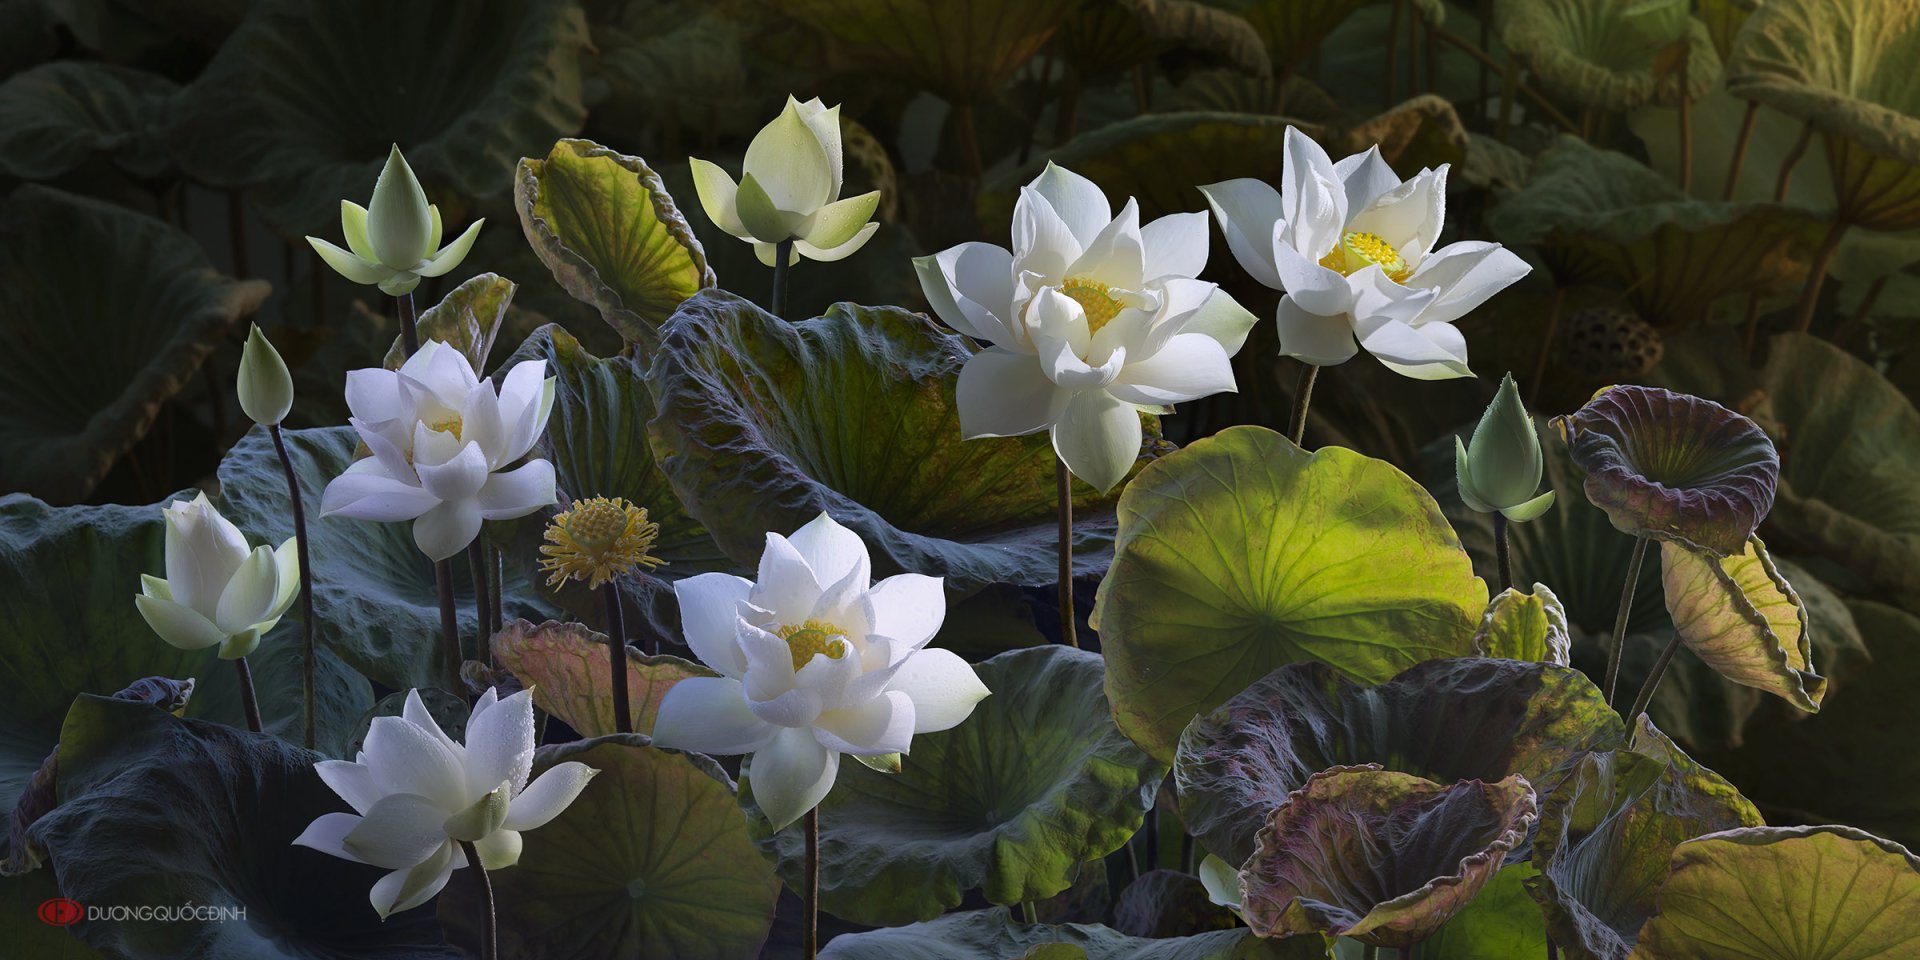 Lục bình sen trắng tươi sáng luôn là nguồn cảm hứng tuyệt vời cho các hình nền thường được đặt tên là hình nền hoa sen trắng. Từ những bông hoa nhỏ đến những cánh hoa lớn, họ đều tạo ra sự thanh lịch và sang trọng khi đồng hành trên màn hình của bạn.